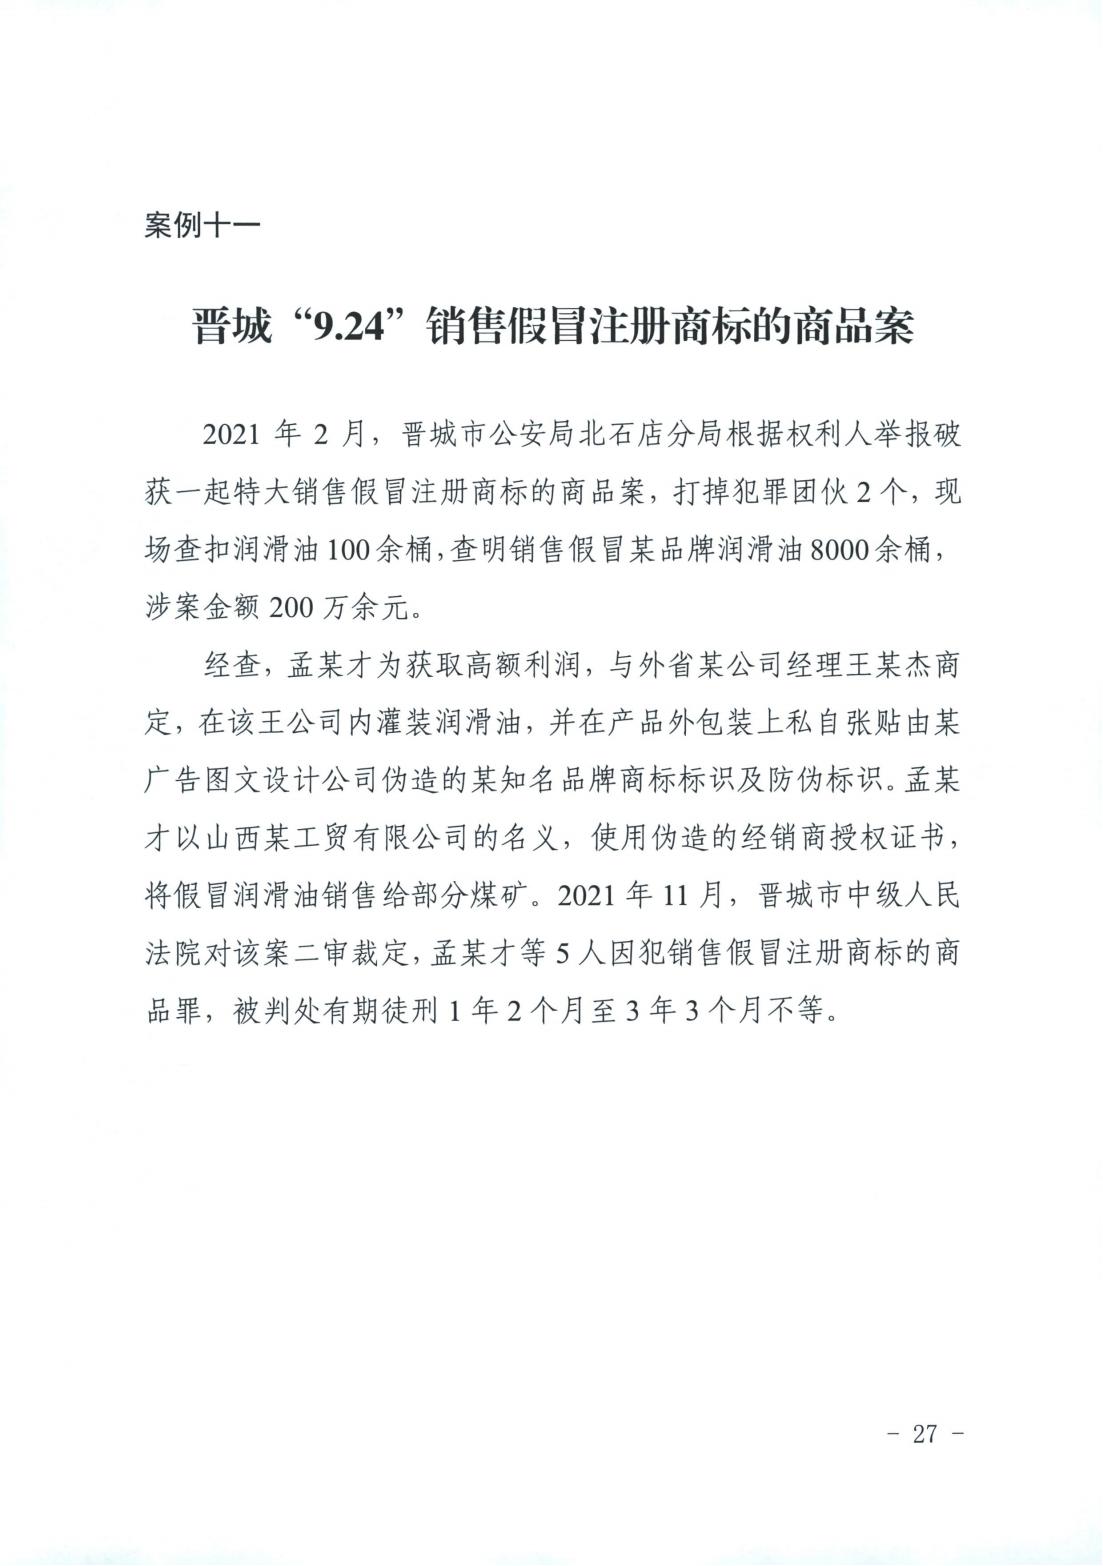 山西省消费者权益保护工作厅际联席会议办公室关于2022年“3.15”相关工作的情况通报(图27)